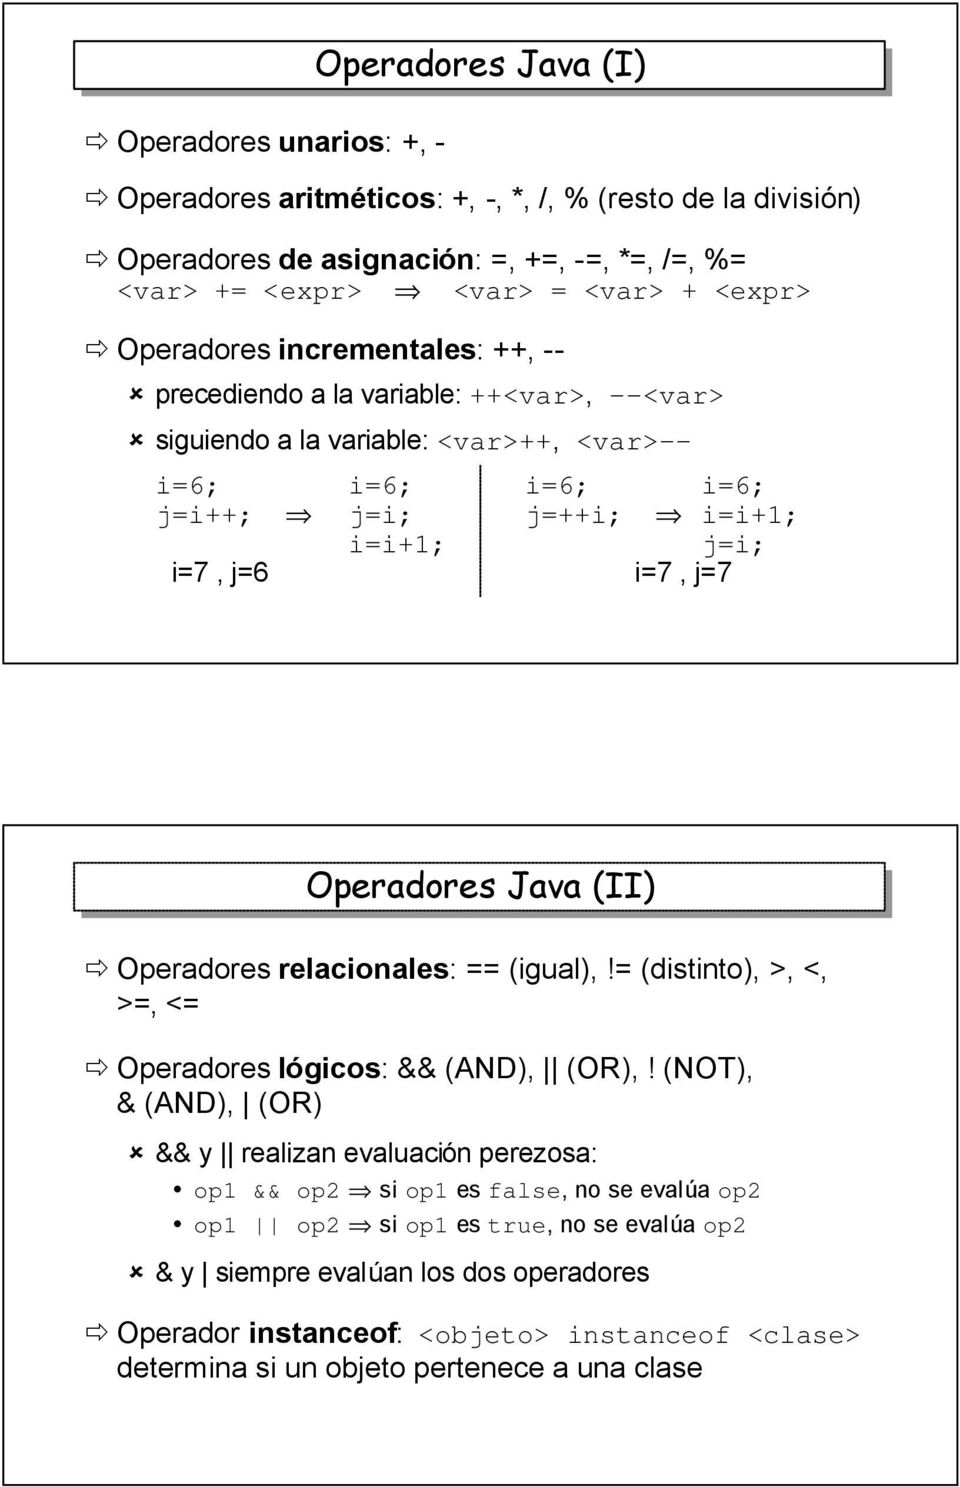 Operadores Java (II) Operadores relacionales: == (igual),!= (distinto), >, <, >=, <= Operadores lógicos: && (AND), (OR),!